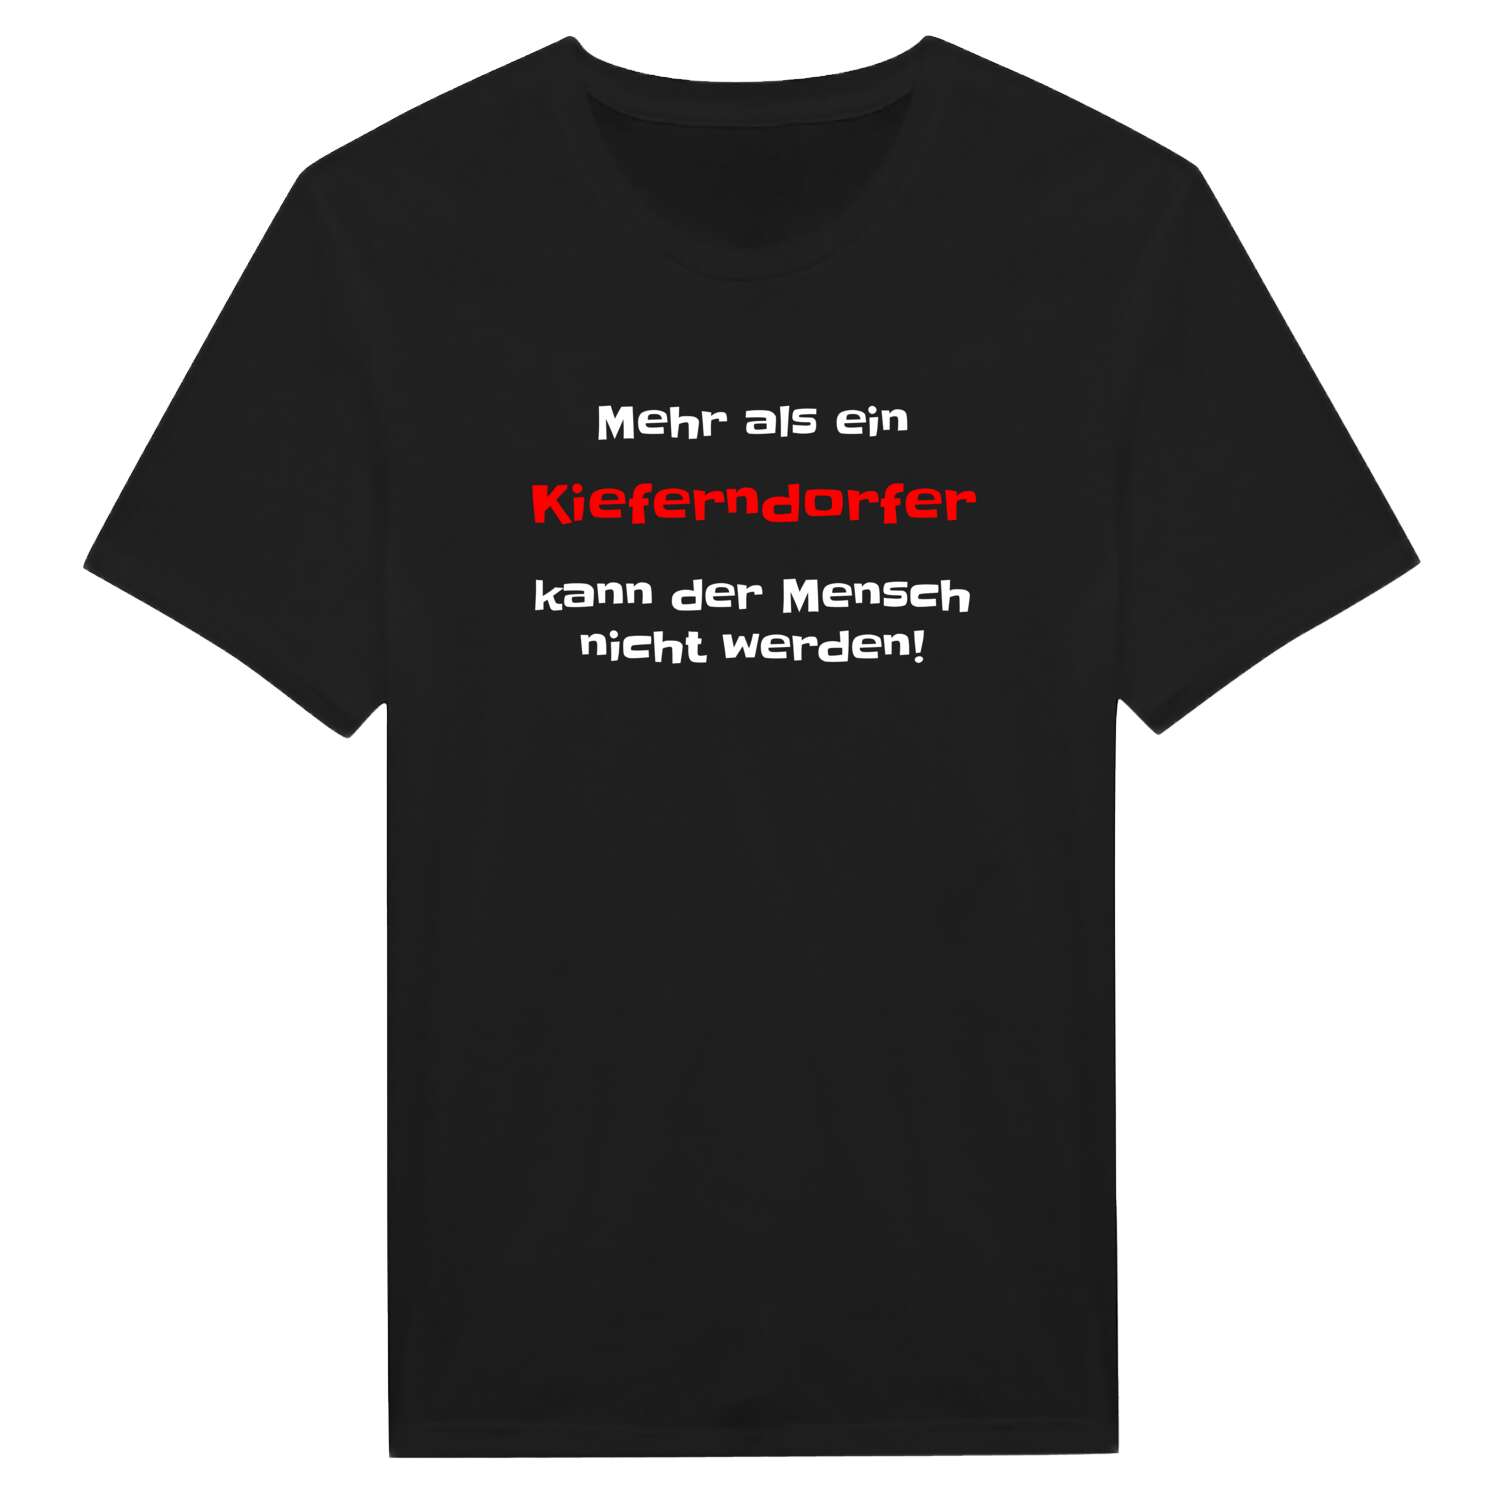 Kieferndorf T-Shirt »Mehr als ein«